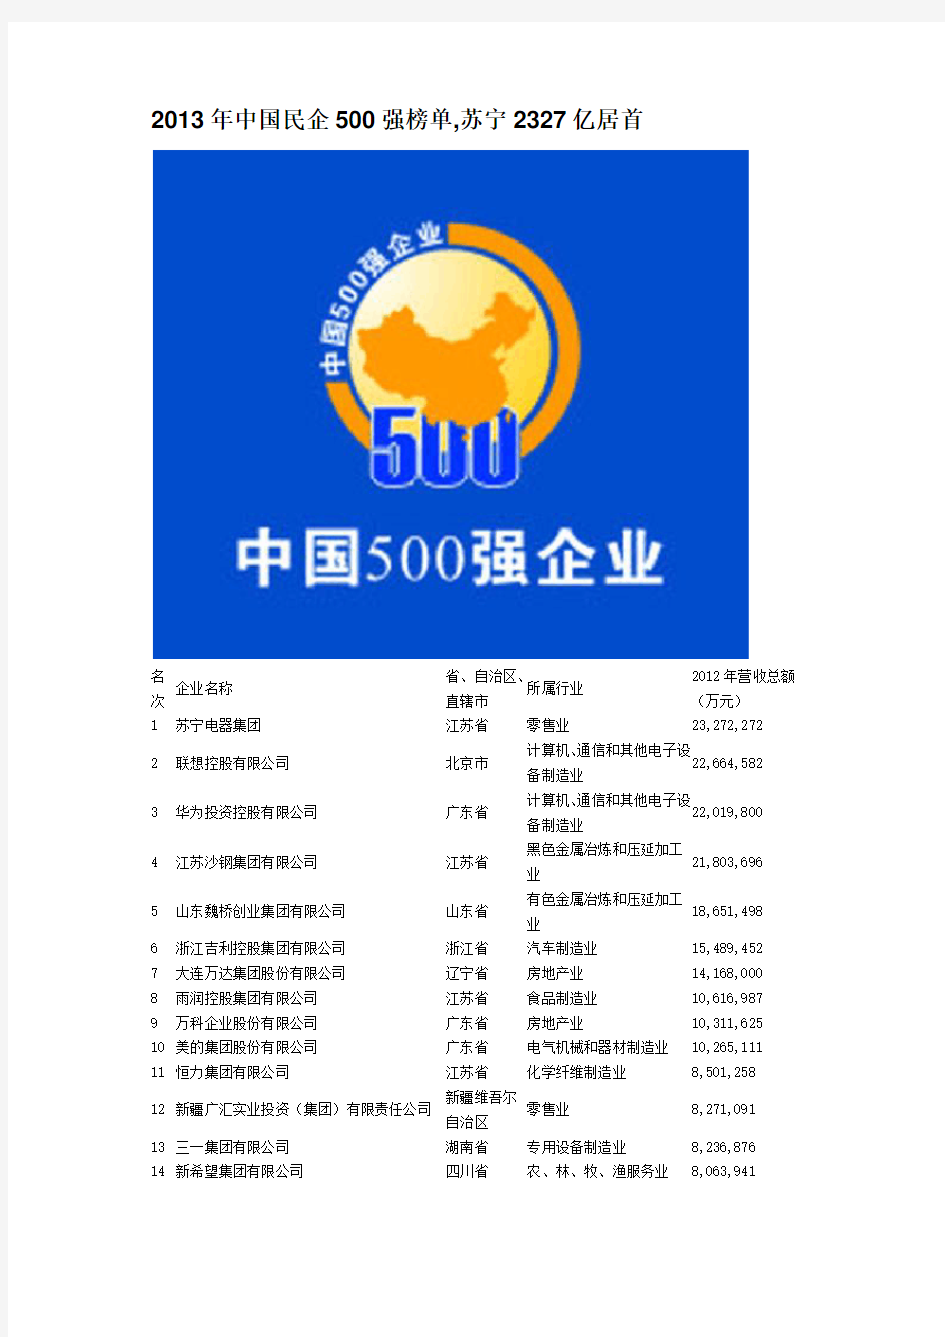 2013年中国民企500强榜单,苏宁2327亿居首